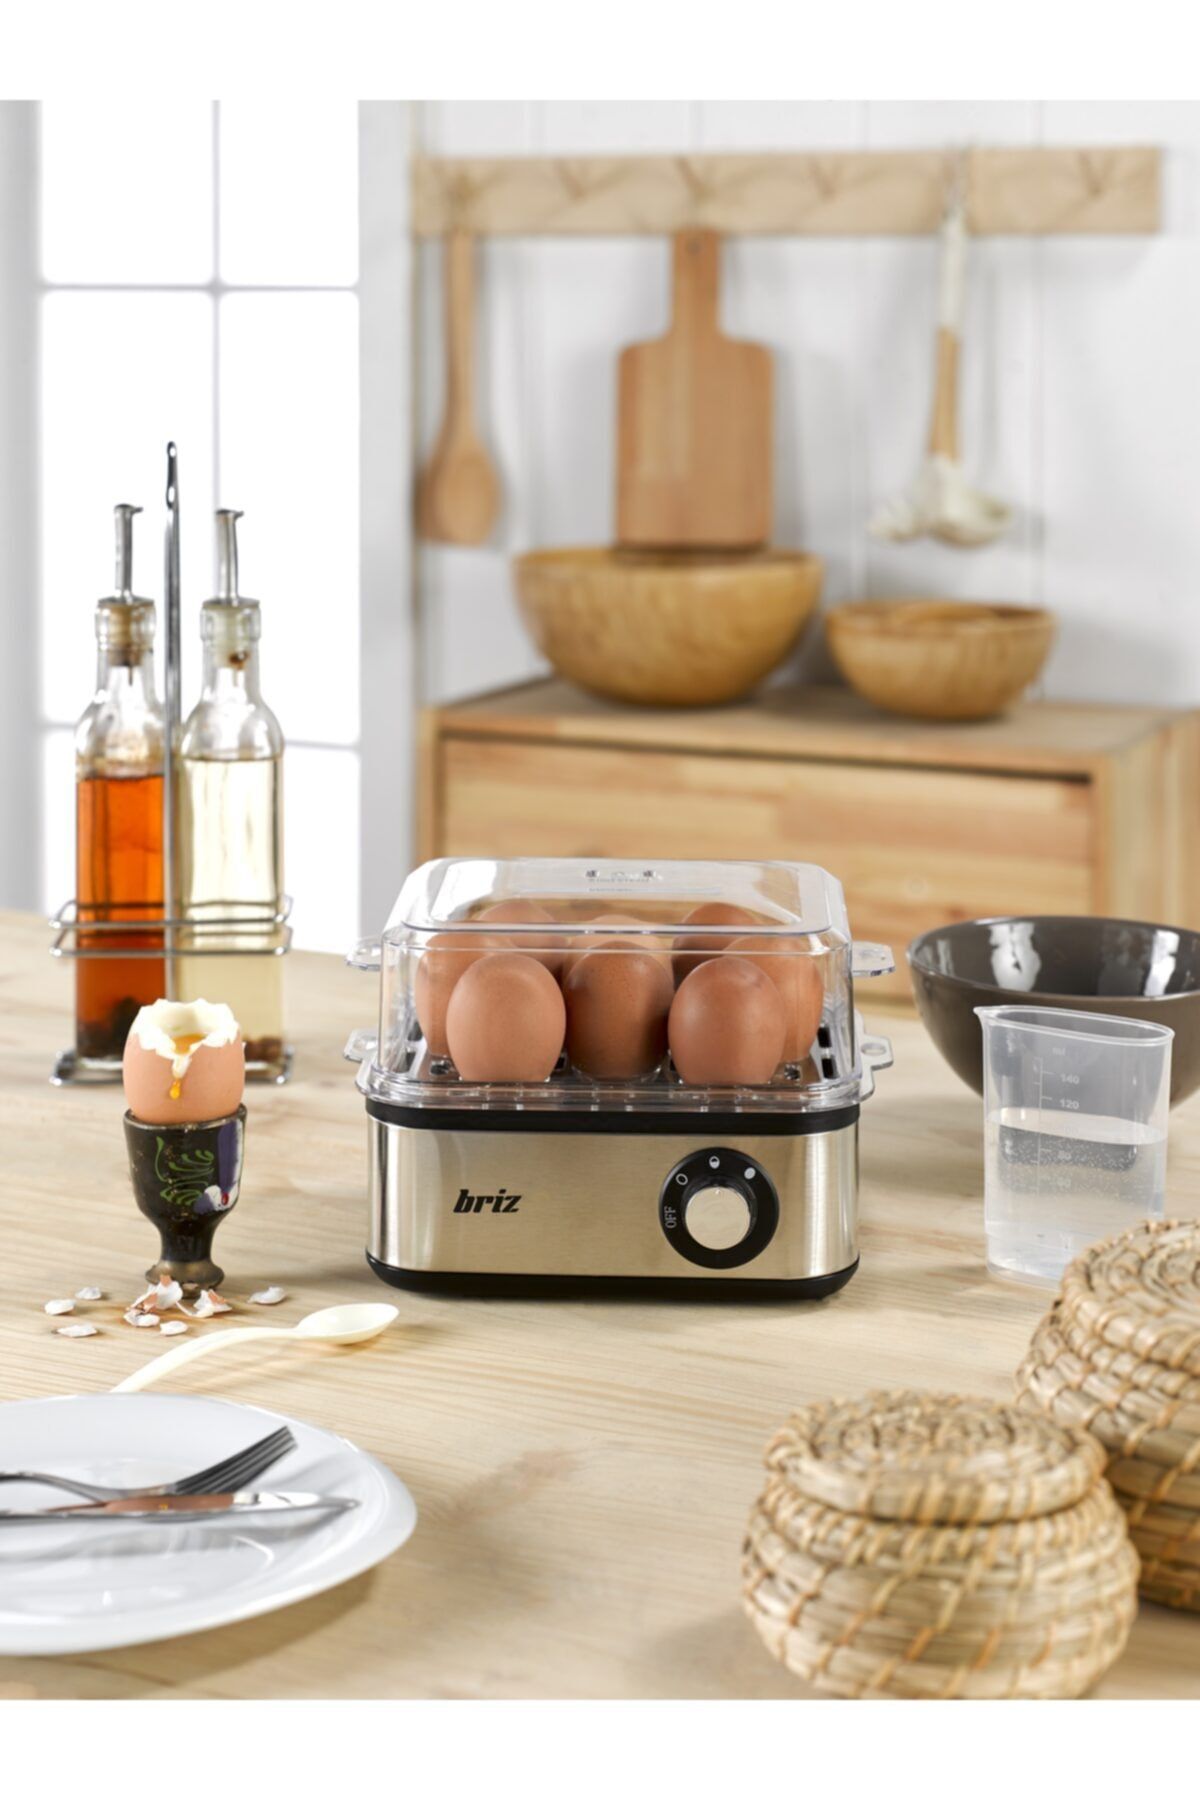 BRİZ Br360 Yumurta Pişirme Ve Haşlama Makinesi